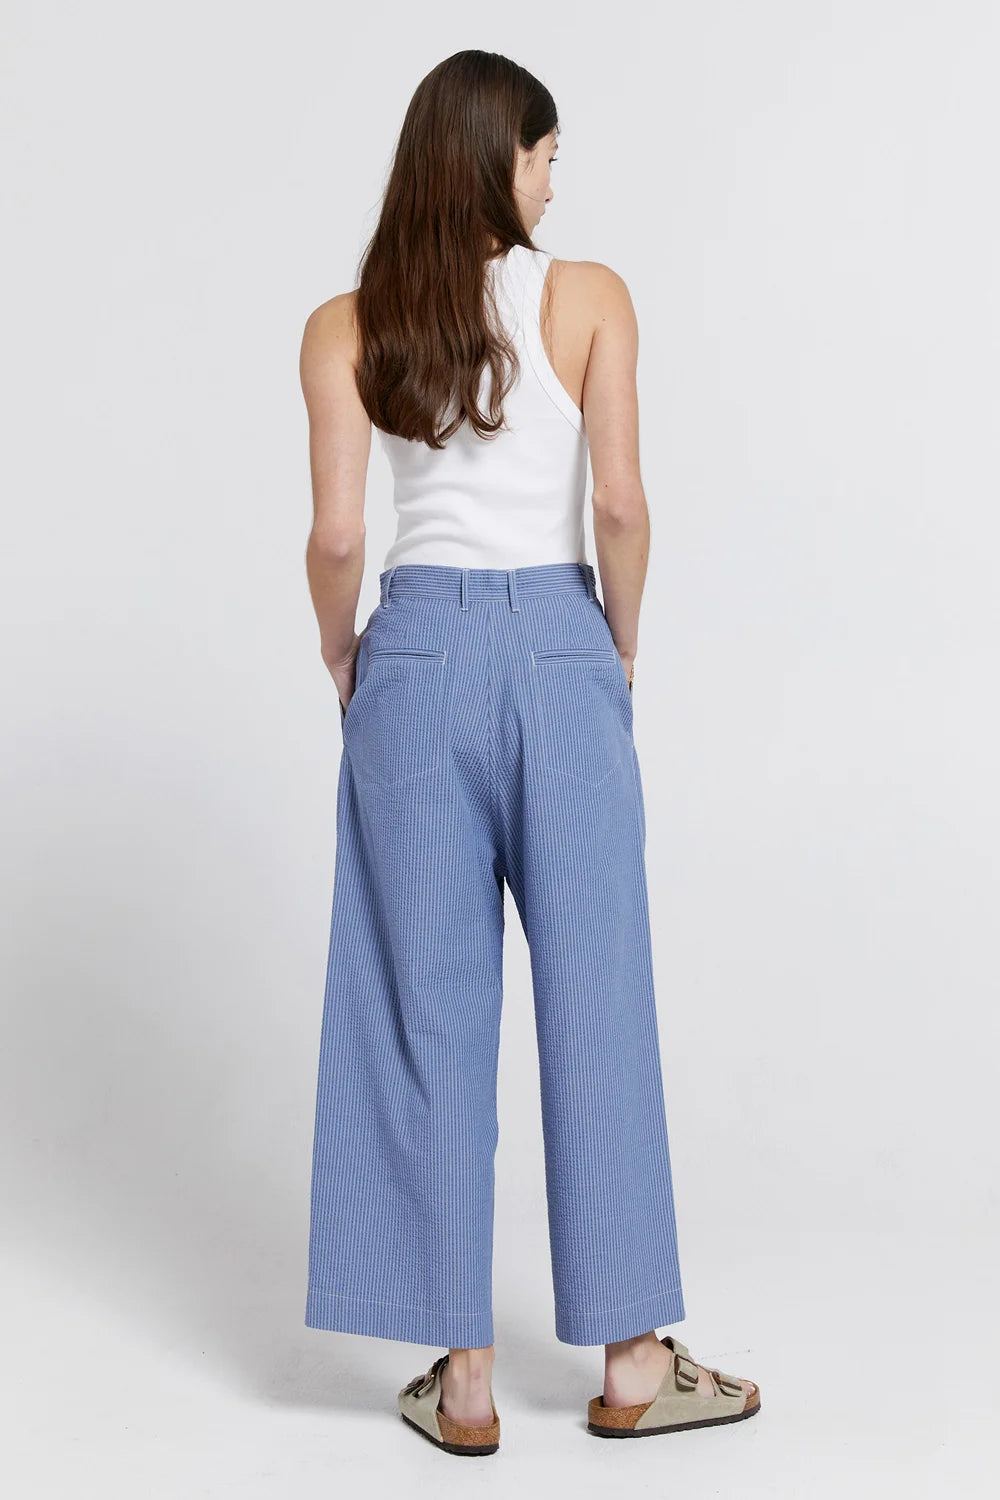 Karen Walker Organic Cotton Workwear Pants // Blue